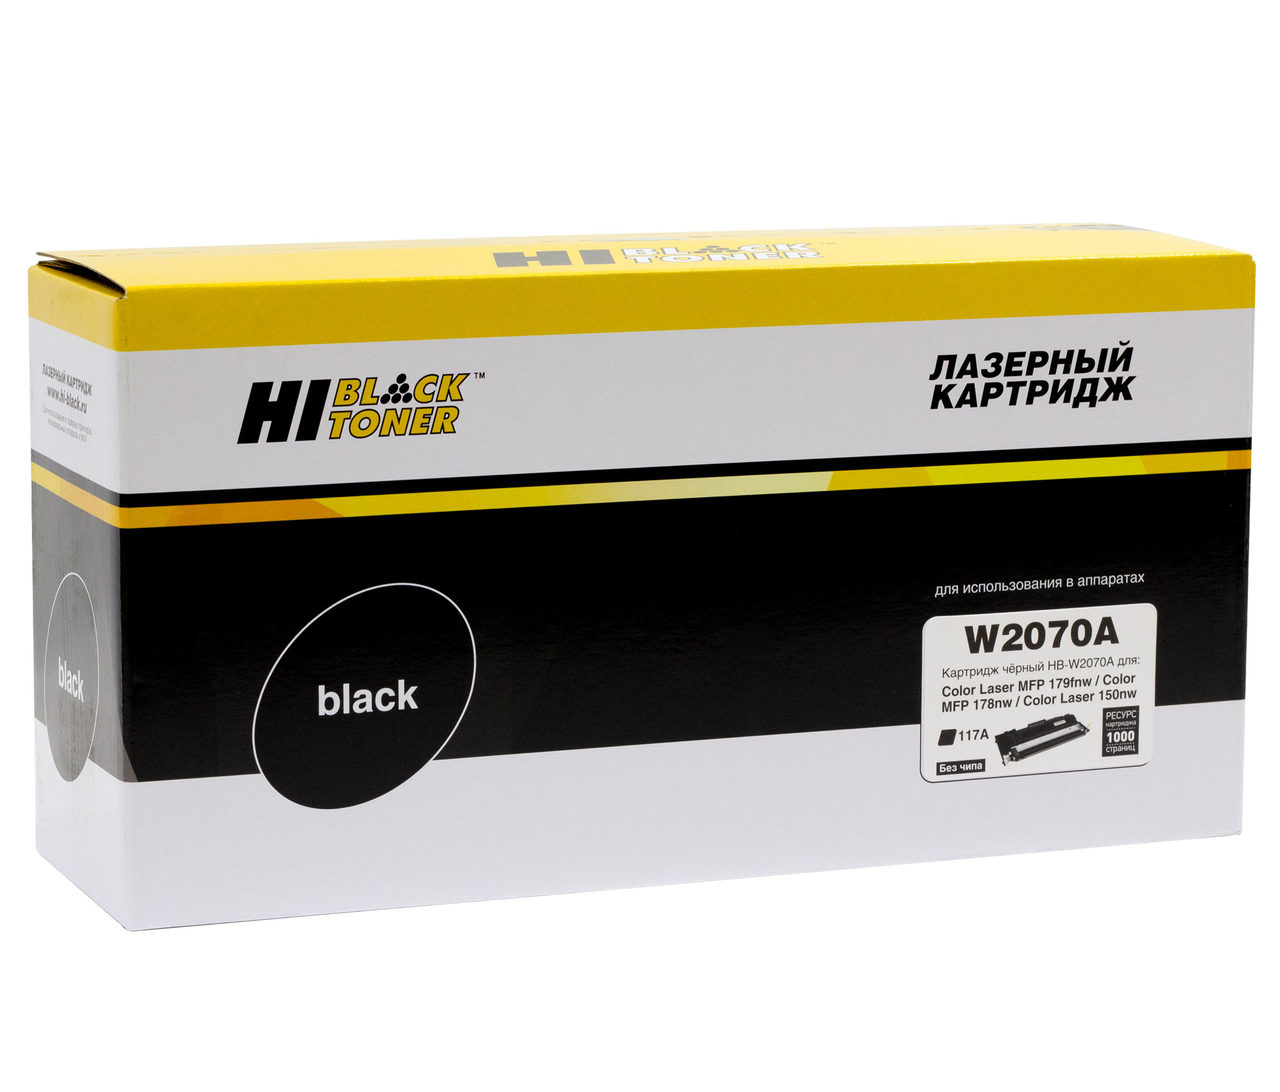 Тонер-картридж Hi-Black (HB-W2070A) для HP CL150a/150nw/MFP178nw/179fnw, 117A, Bk, 1K б/ч